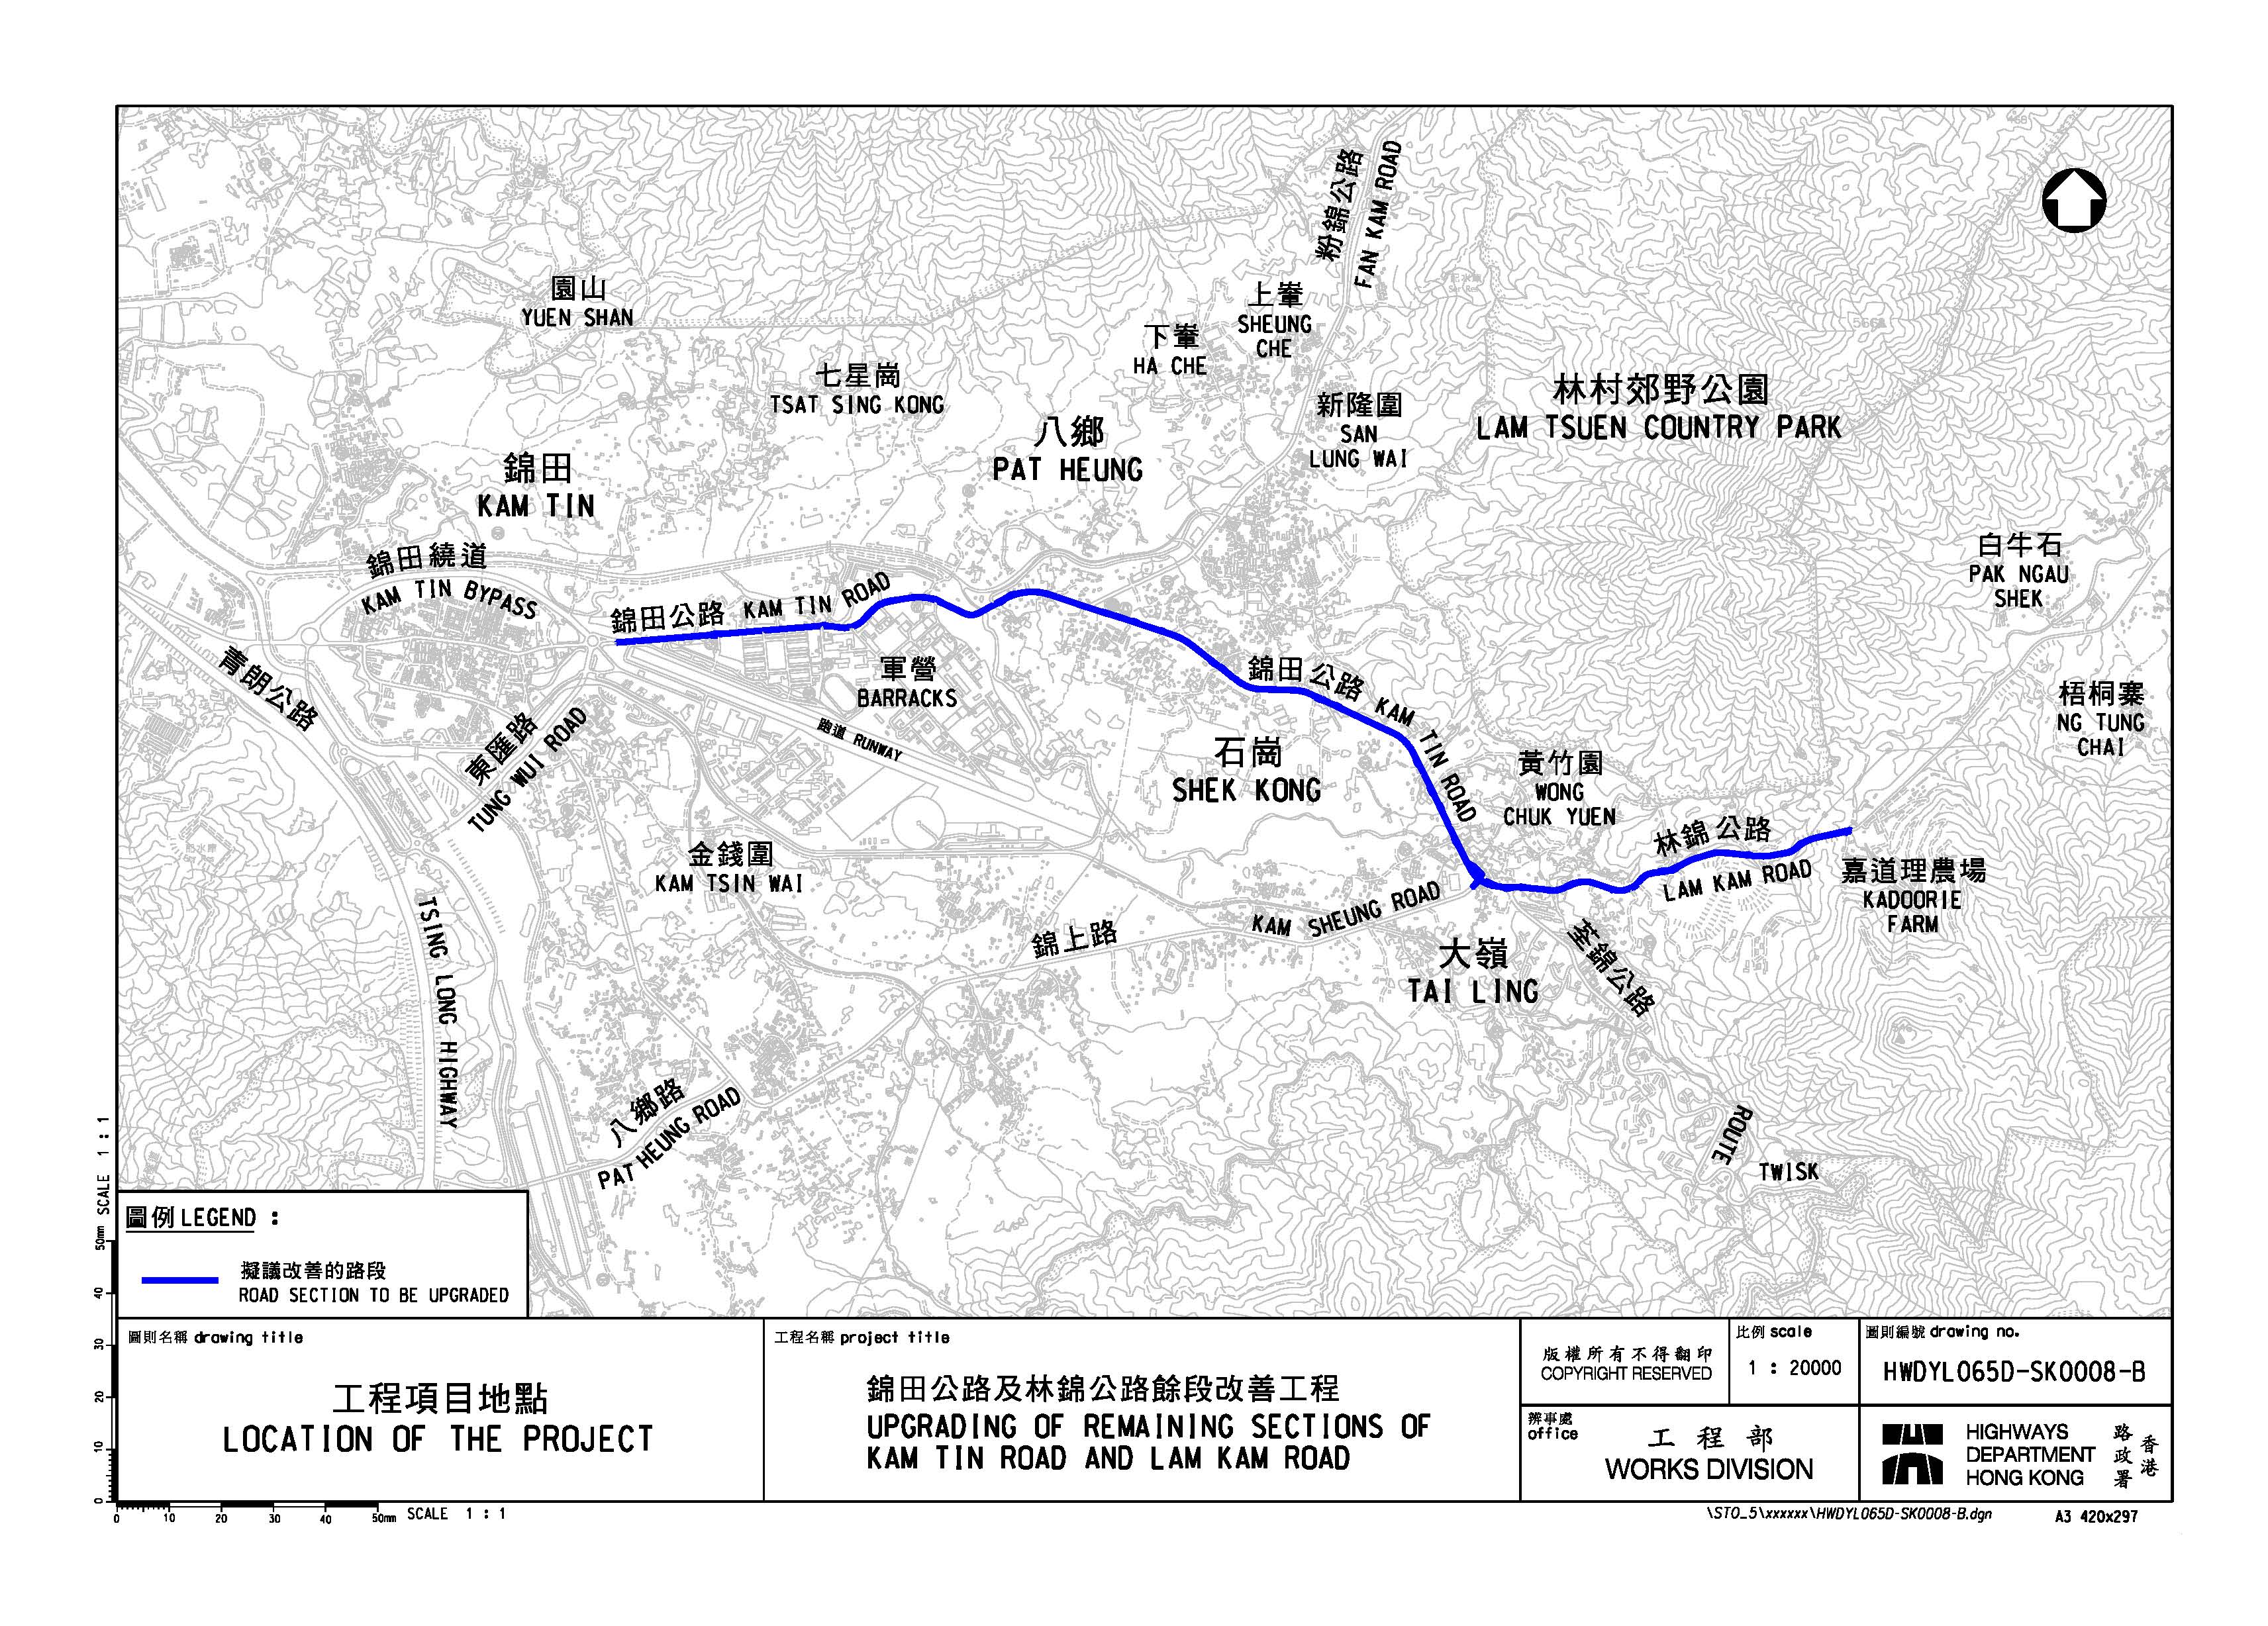 锦田公路及林锦公路余段改善工程 - 平面图